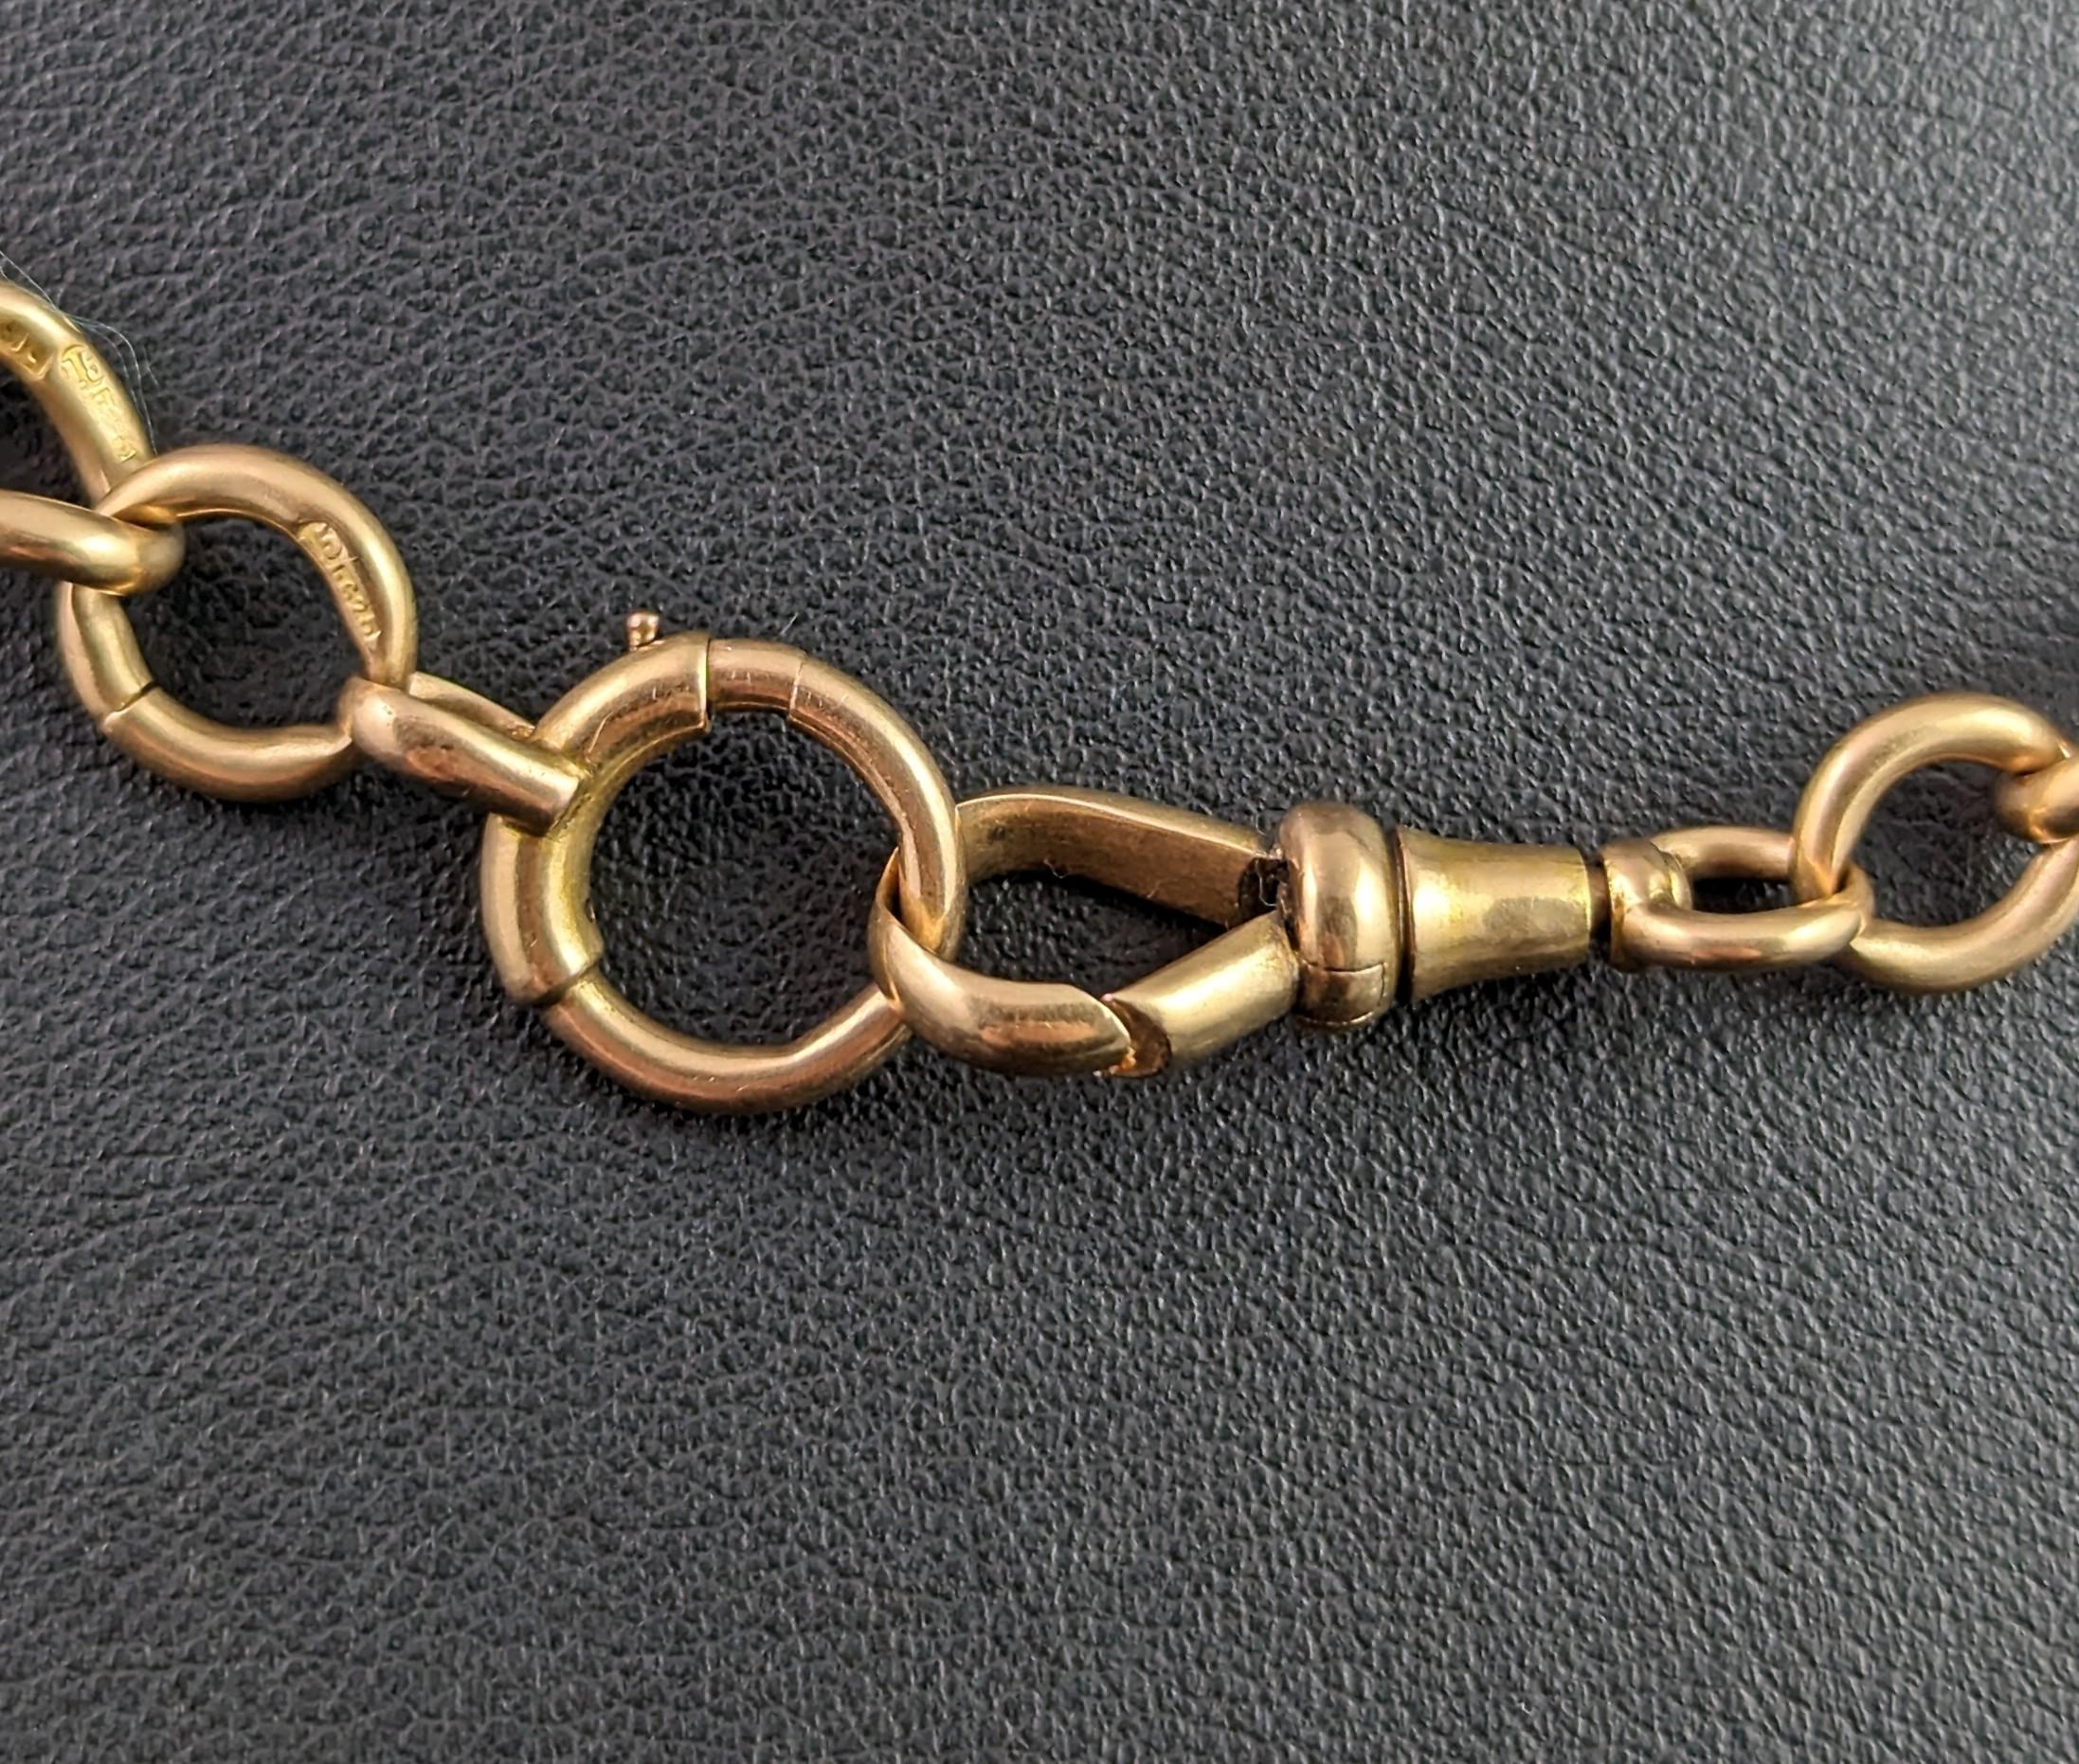 Antique 15k gold Albert chain, Watch chain, heavy  1